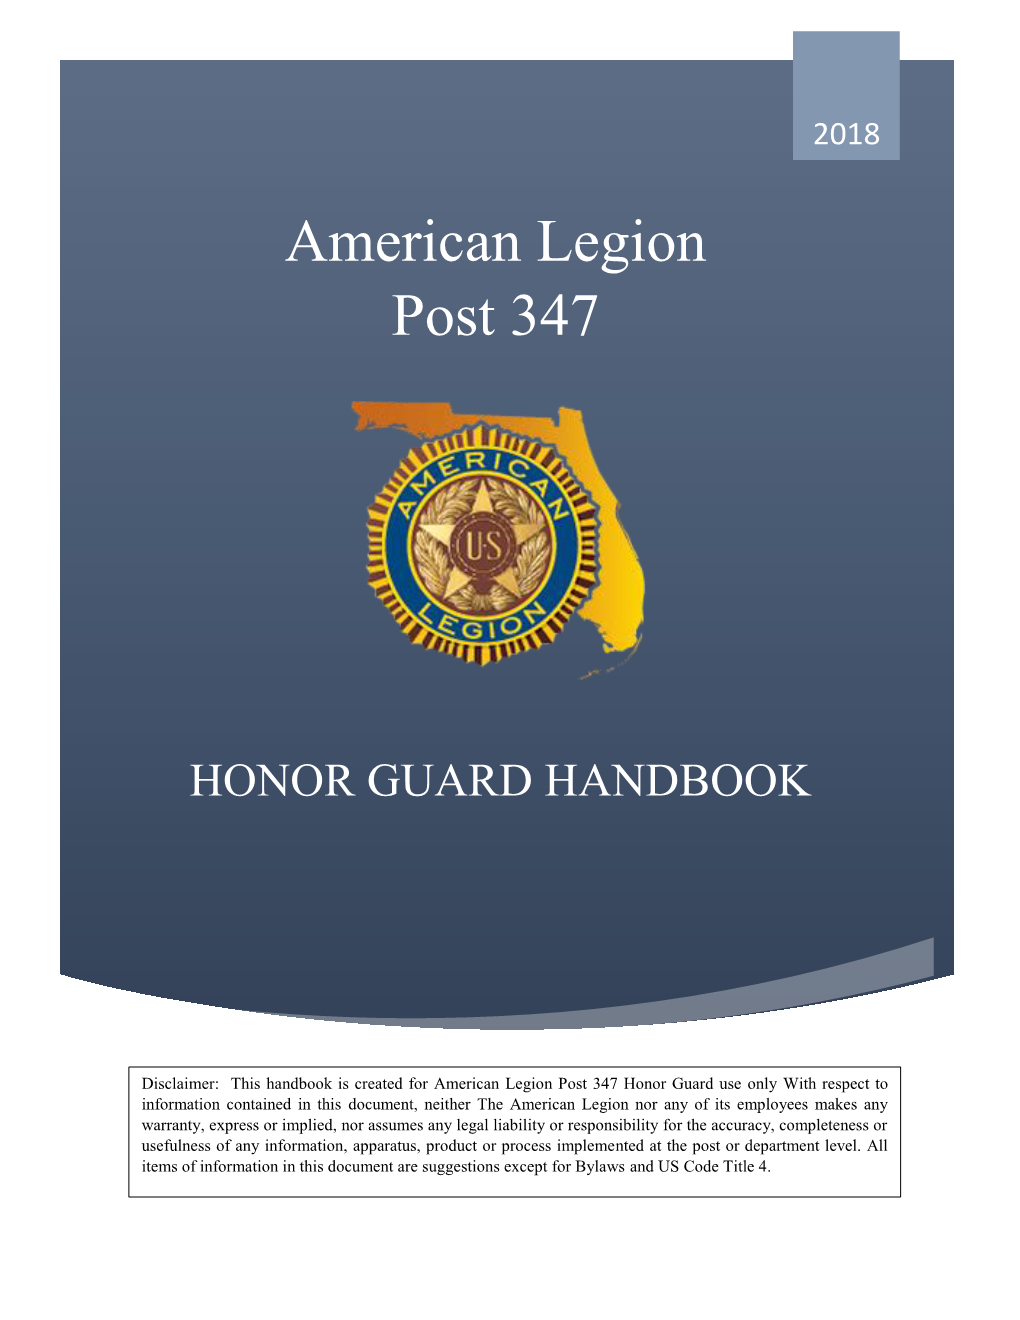 Honor Guard Handbook